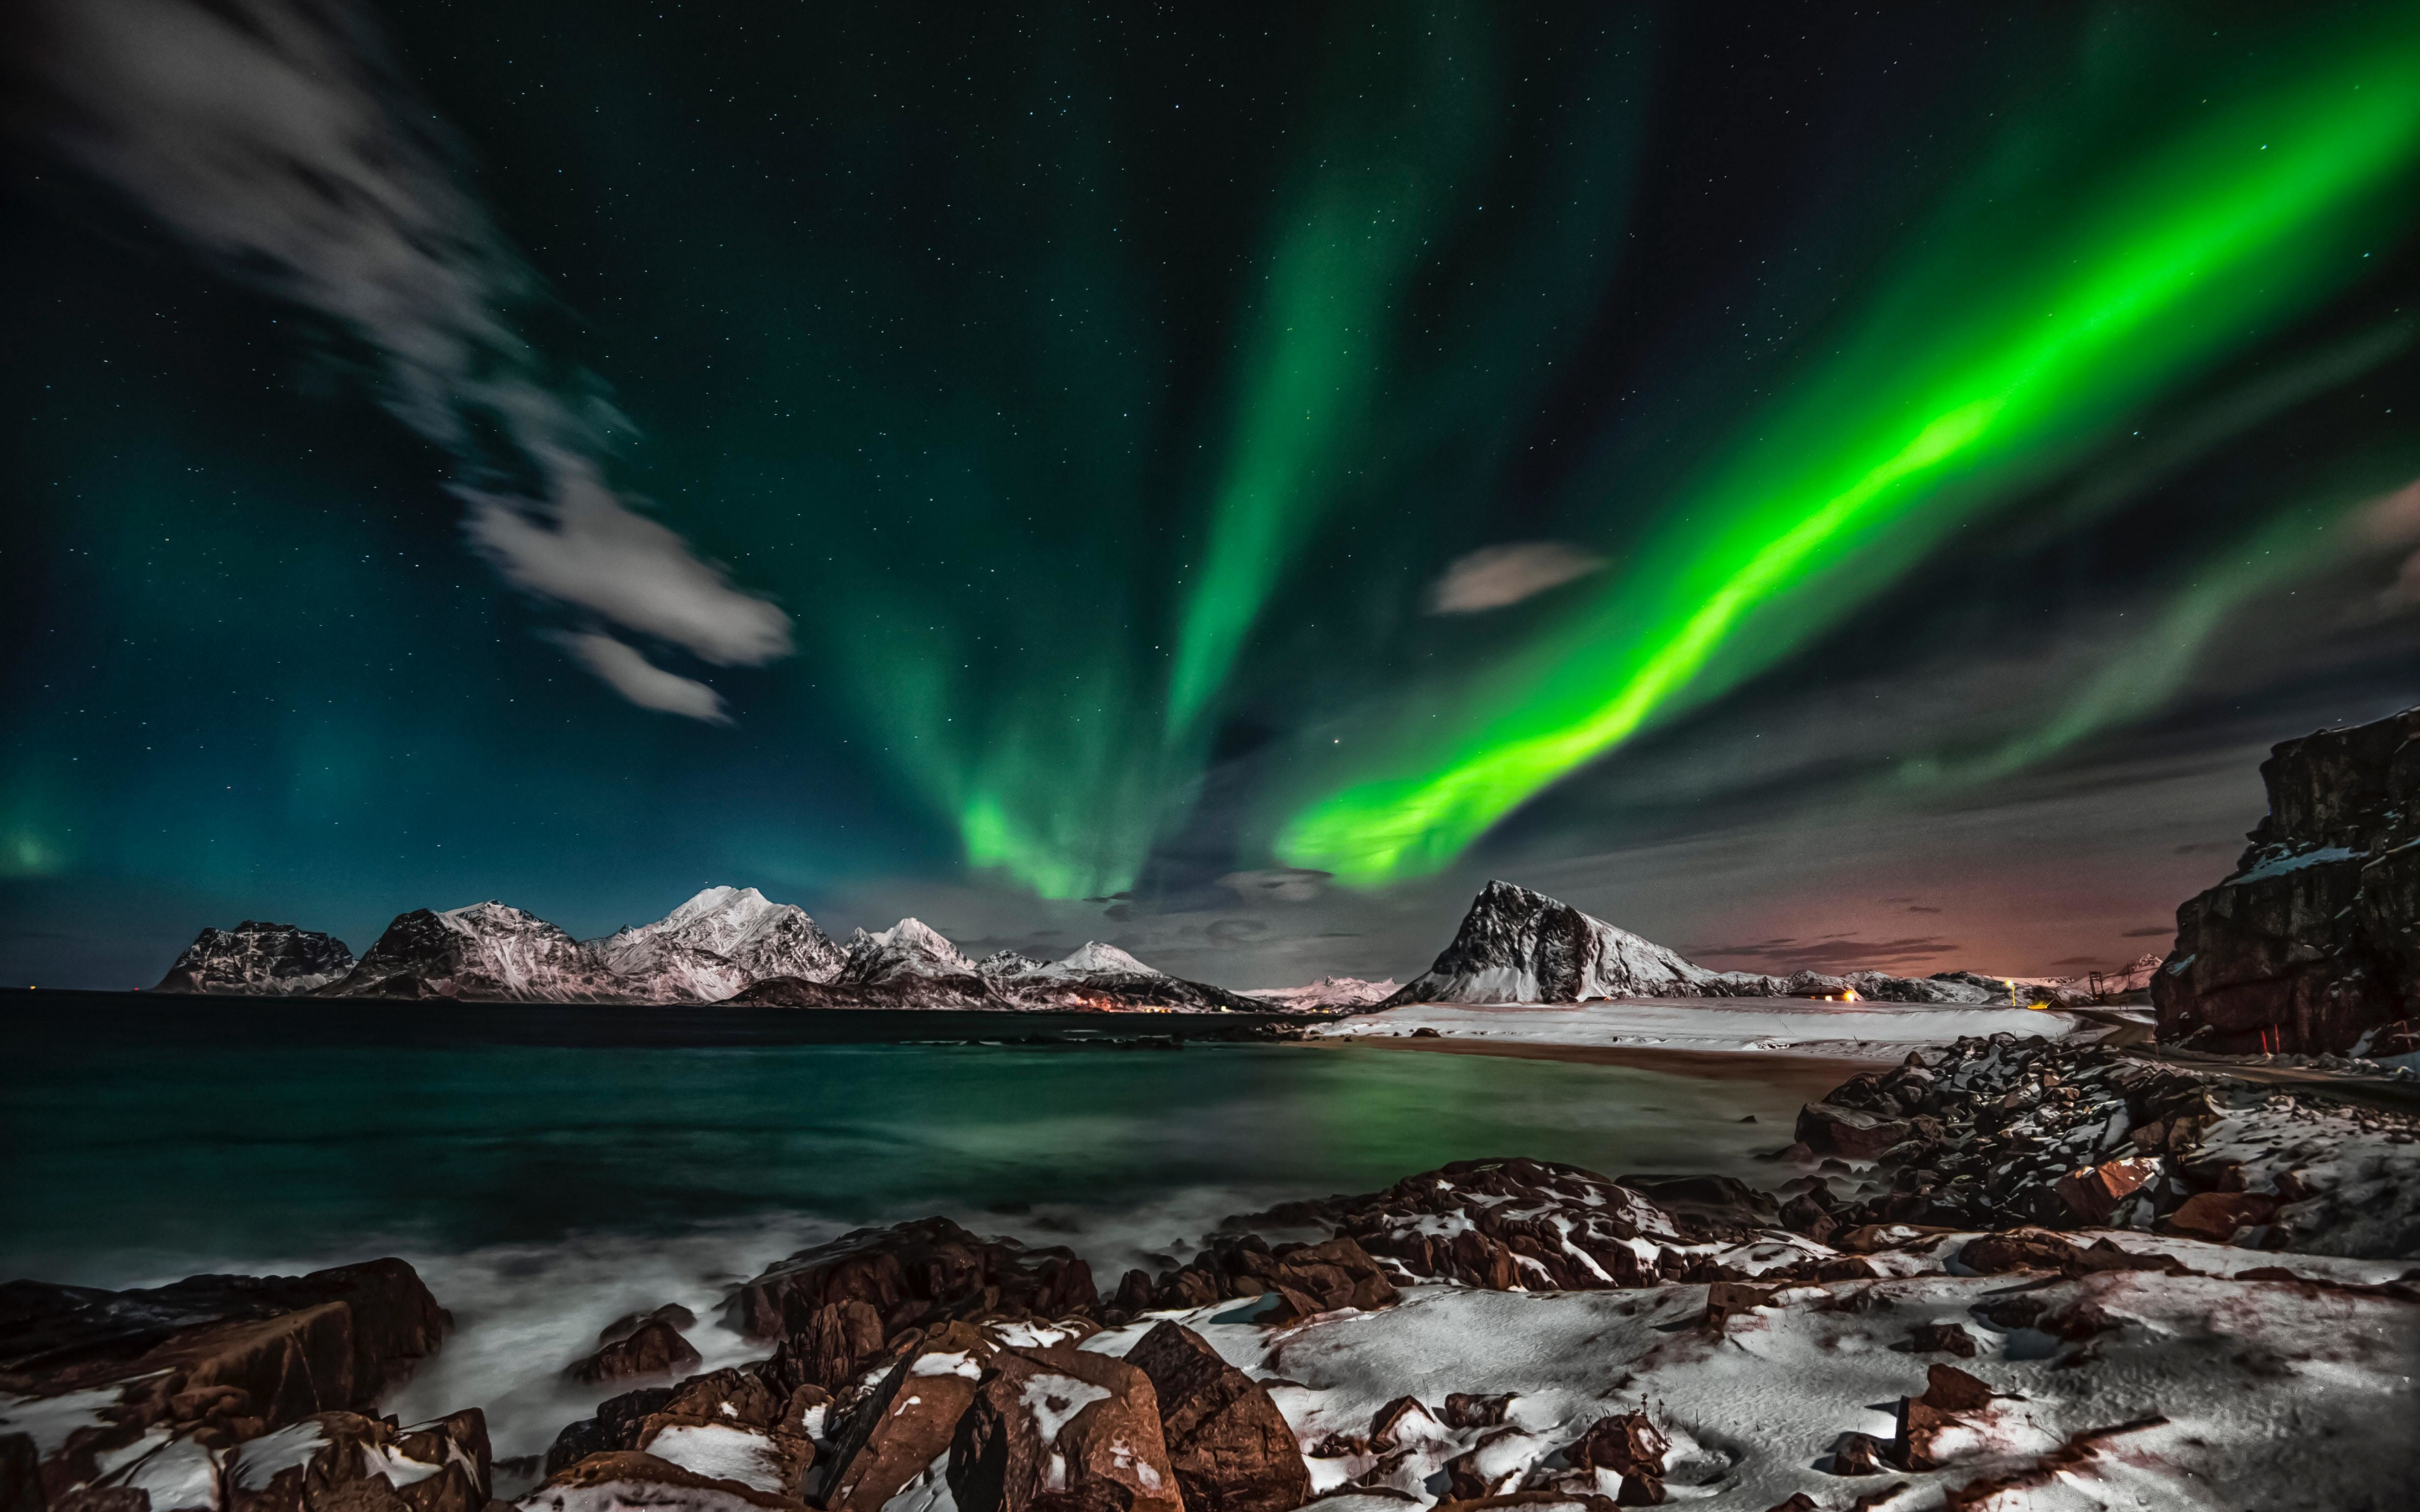 Arctic, mountains, nature, Aurora Borealis, 2880x1800 wallpaper